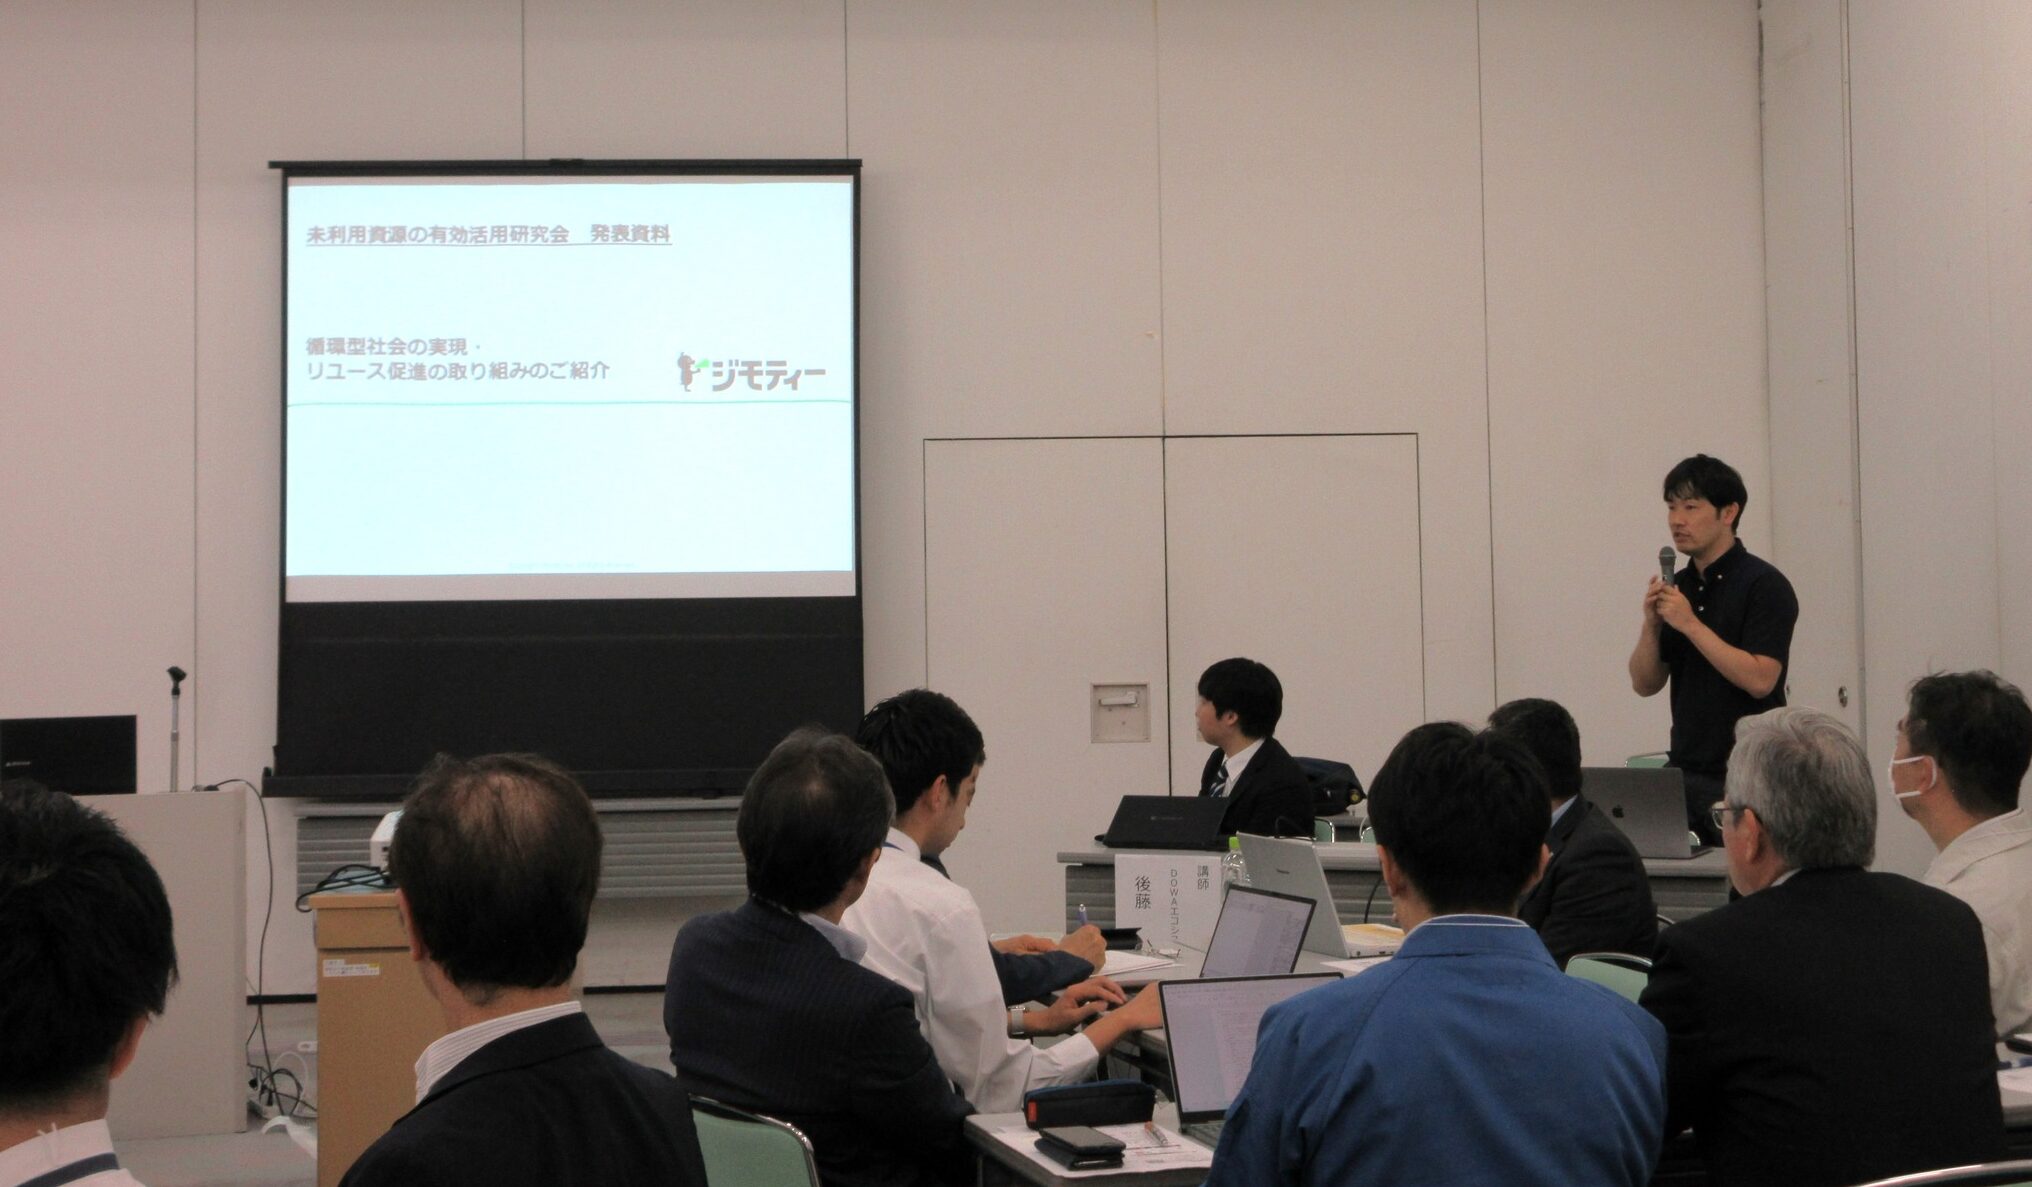 埼玉県産業振興公社主催「未利用資源の有効活用研究会」で、ジモティー様にご登壇いただきました。